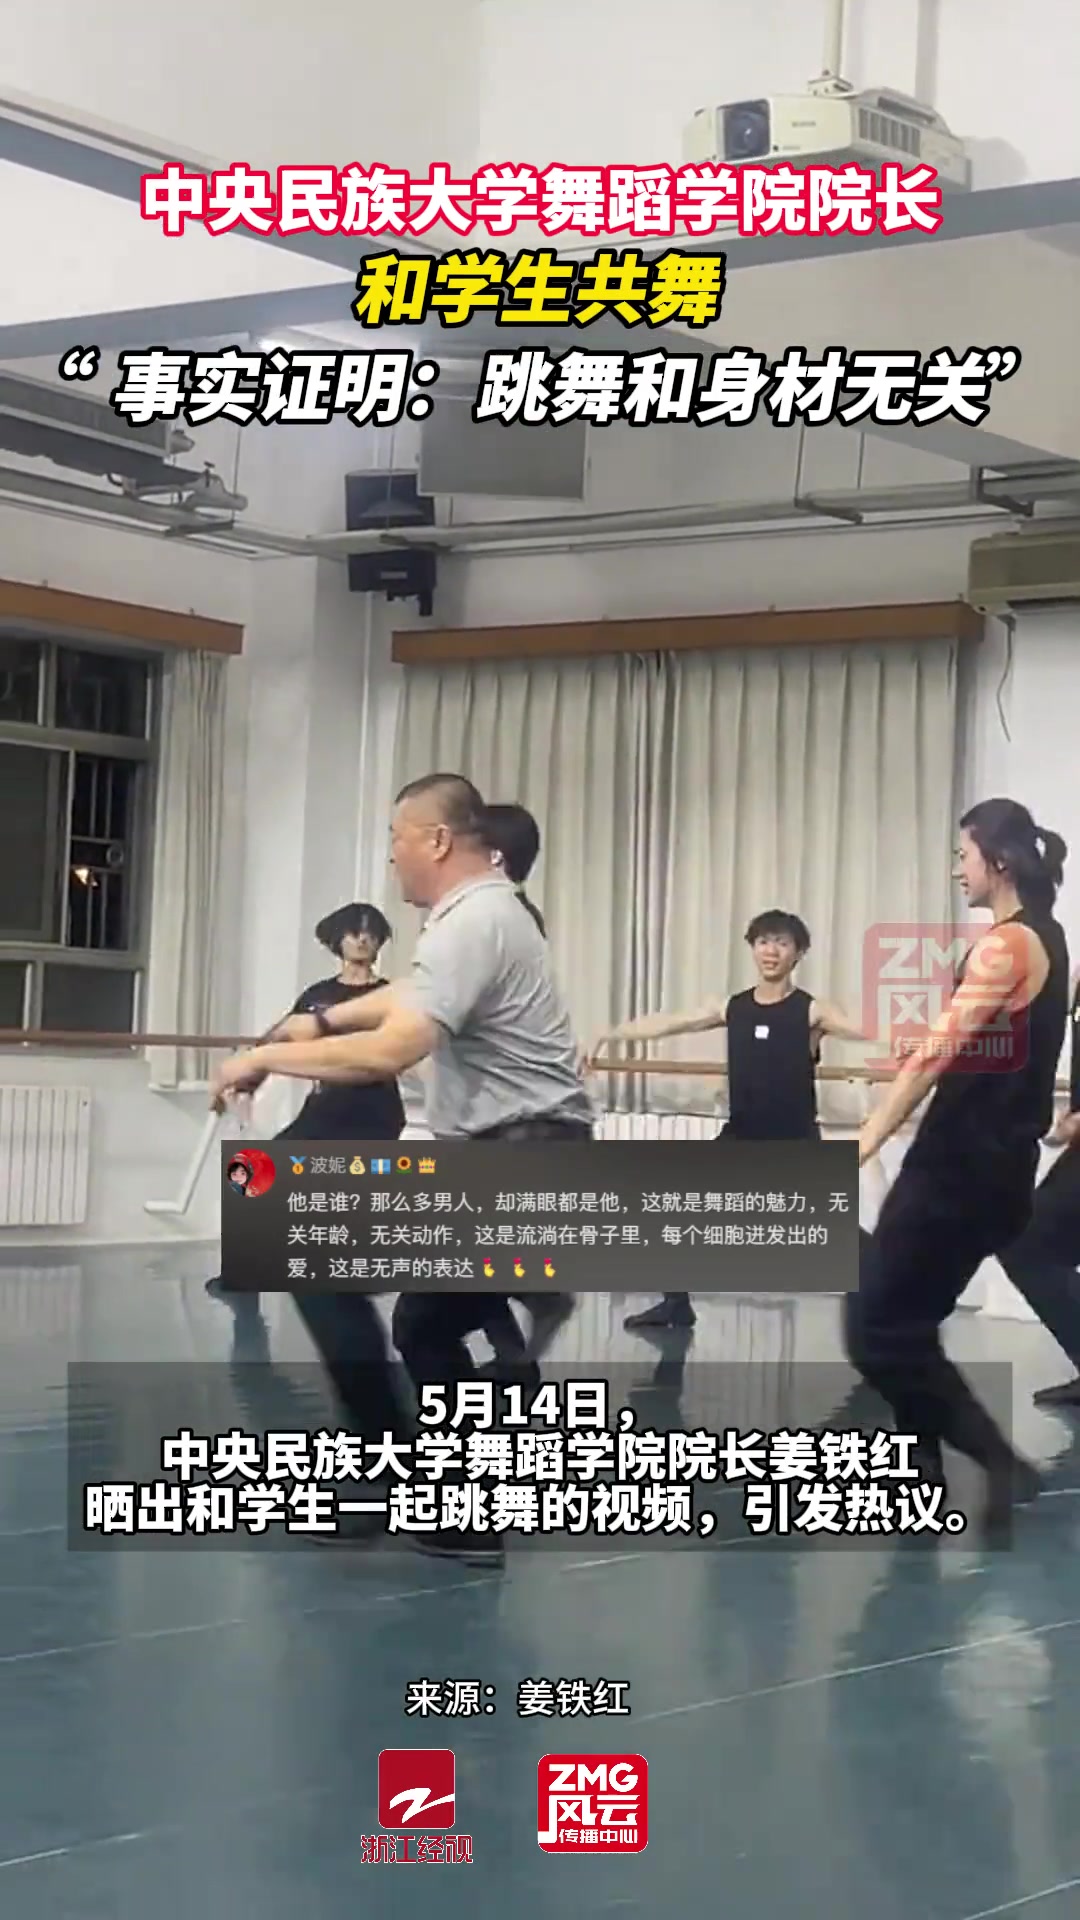 中央民族大学舞蹈学院院长姜铁红和学生一起跳舞